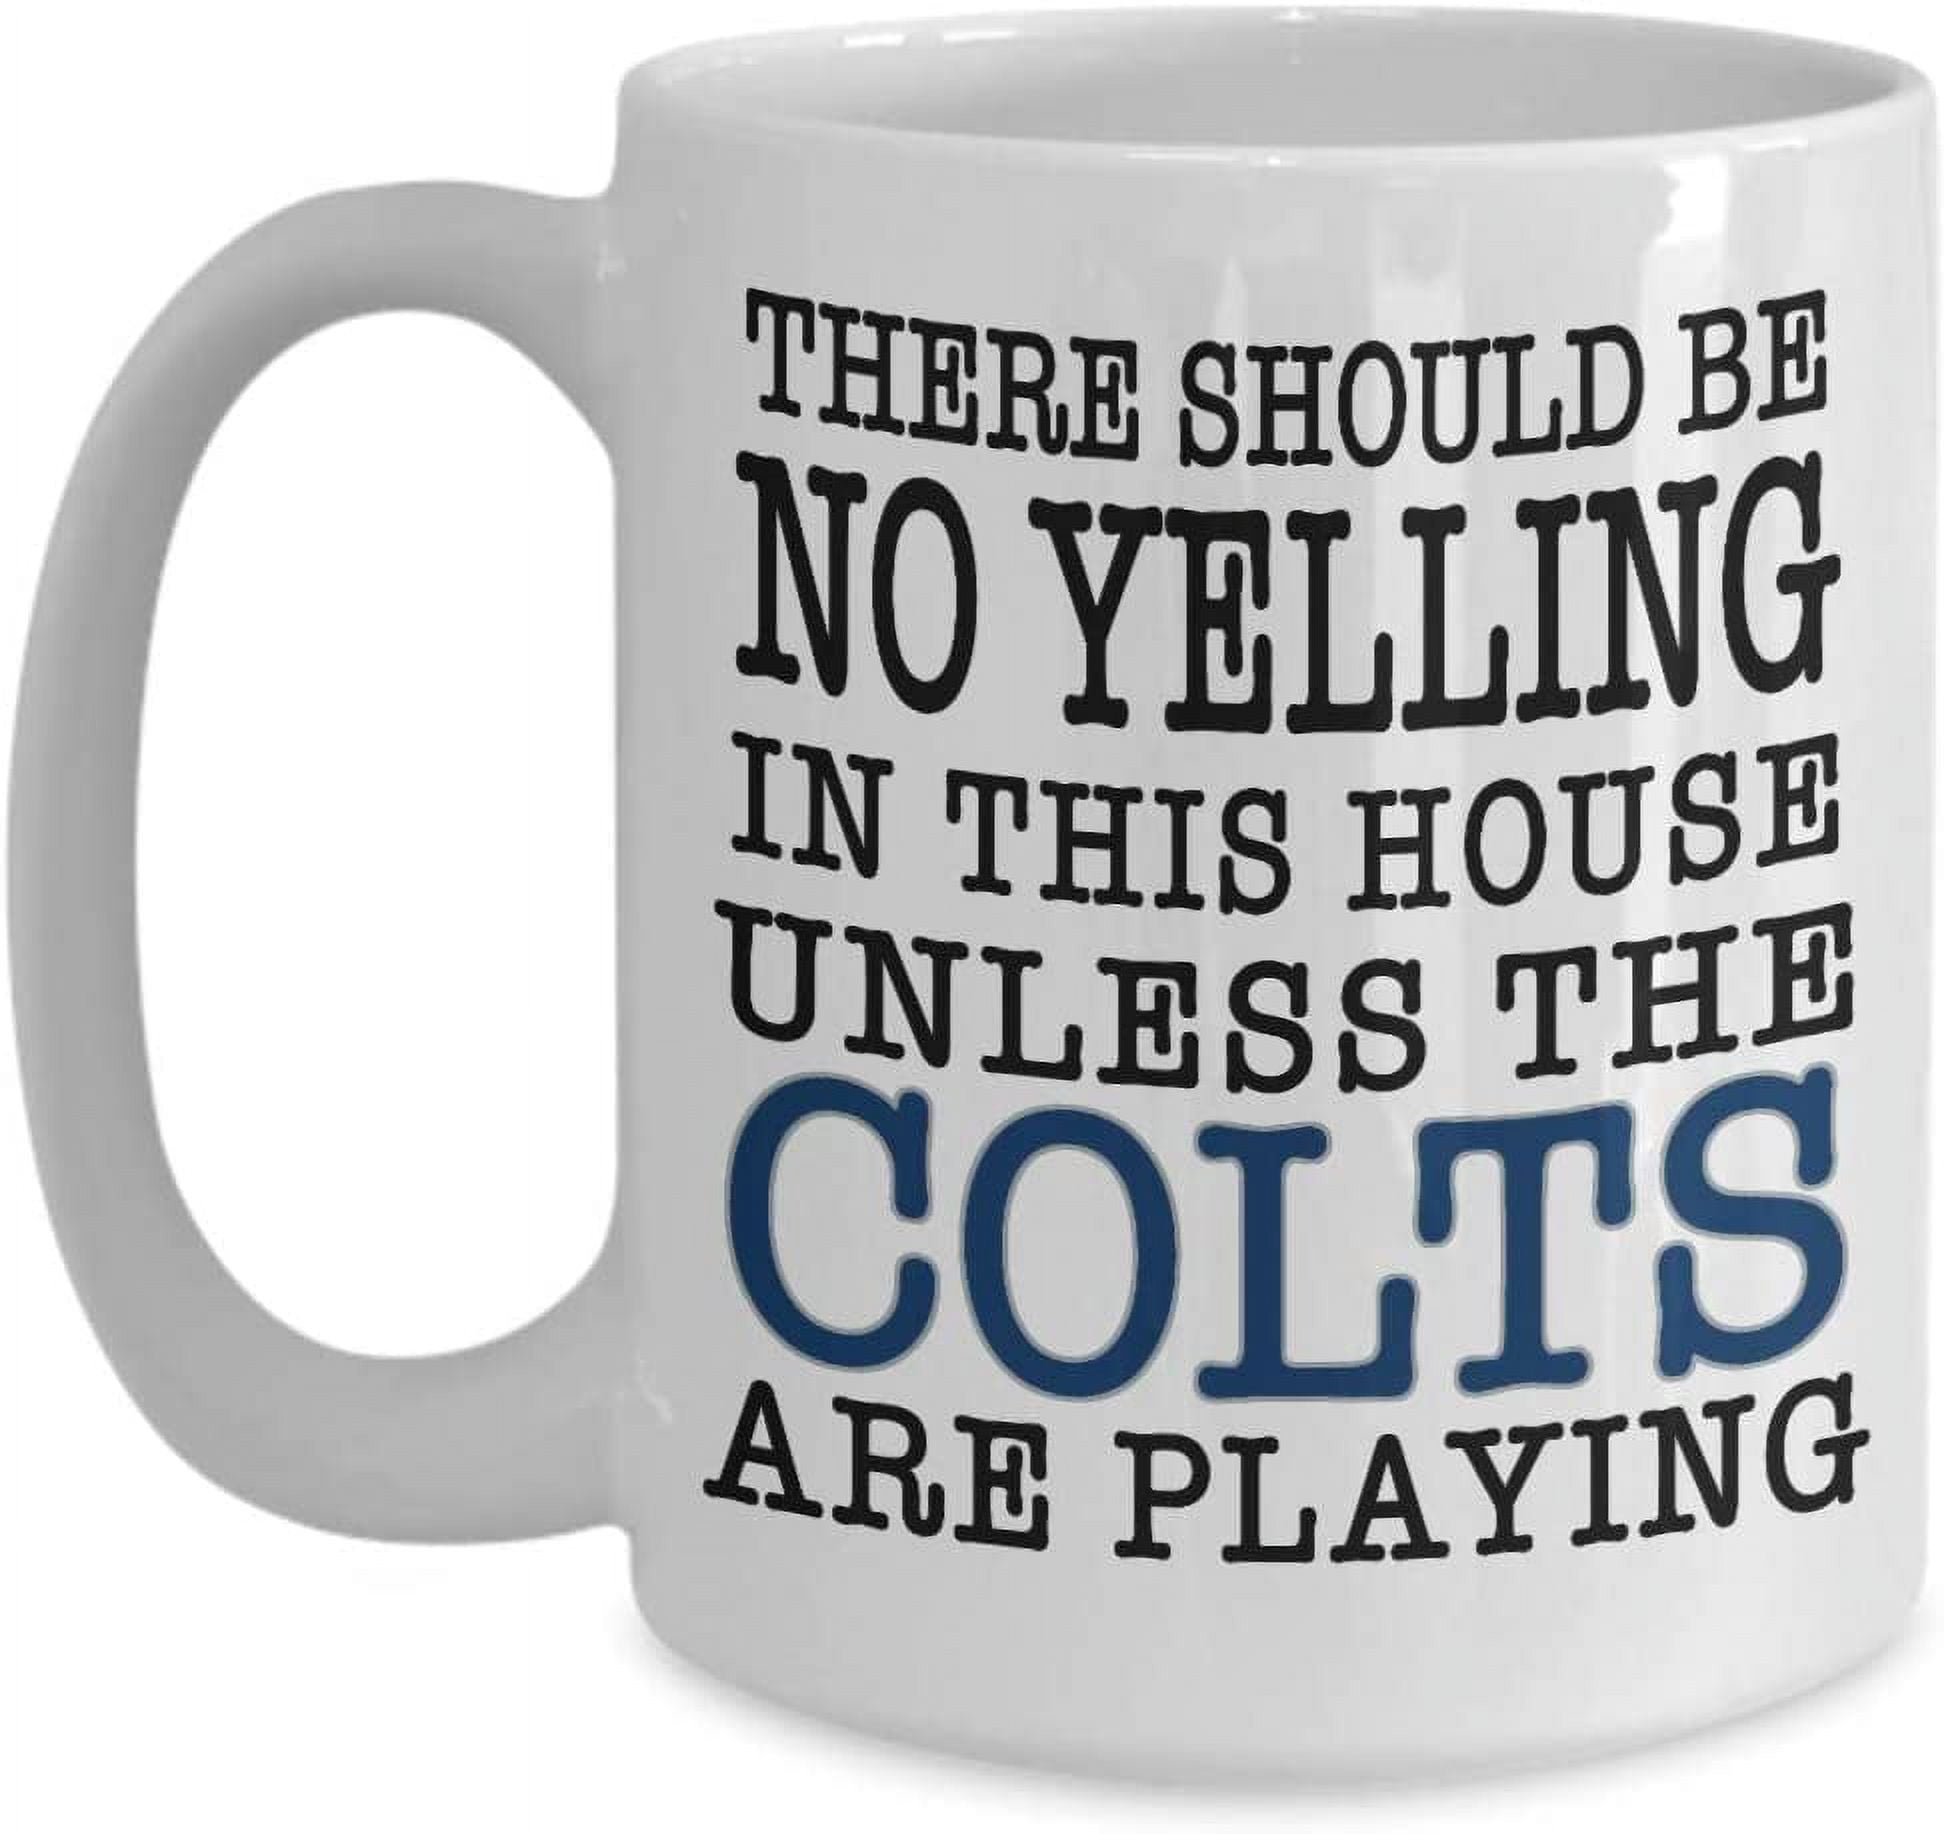 Indianapolis Colts 18oz. Football Mug - Yahoo Shopping